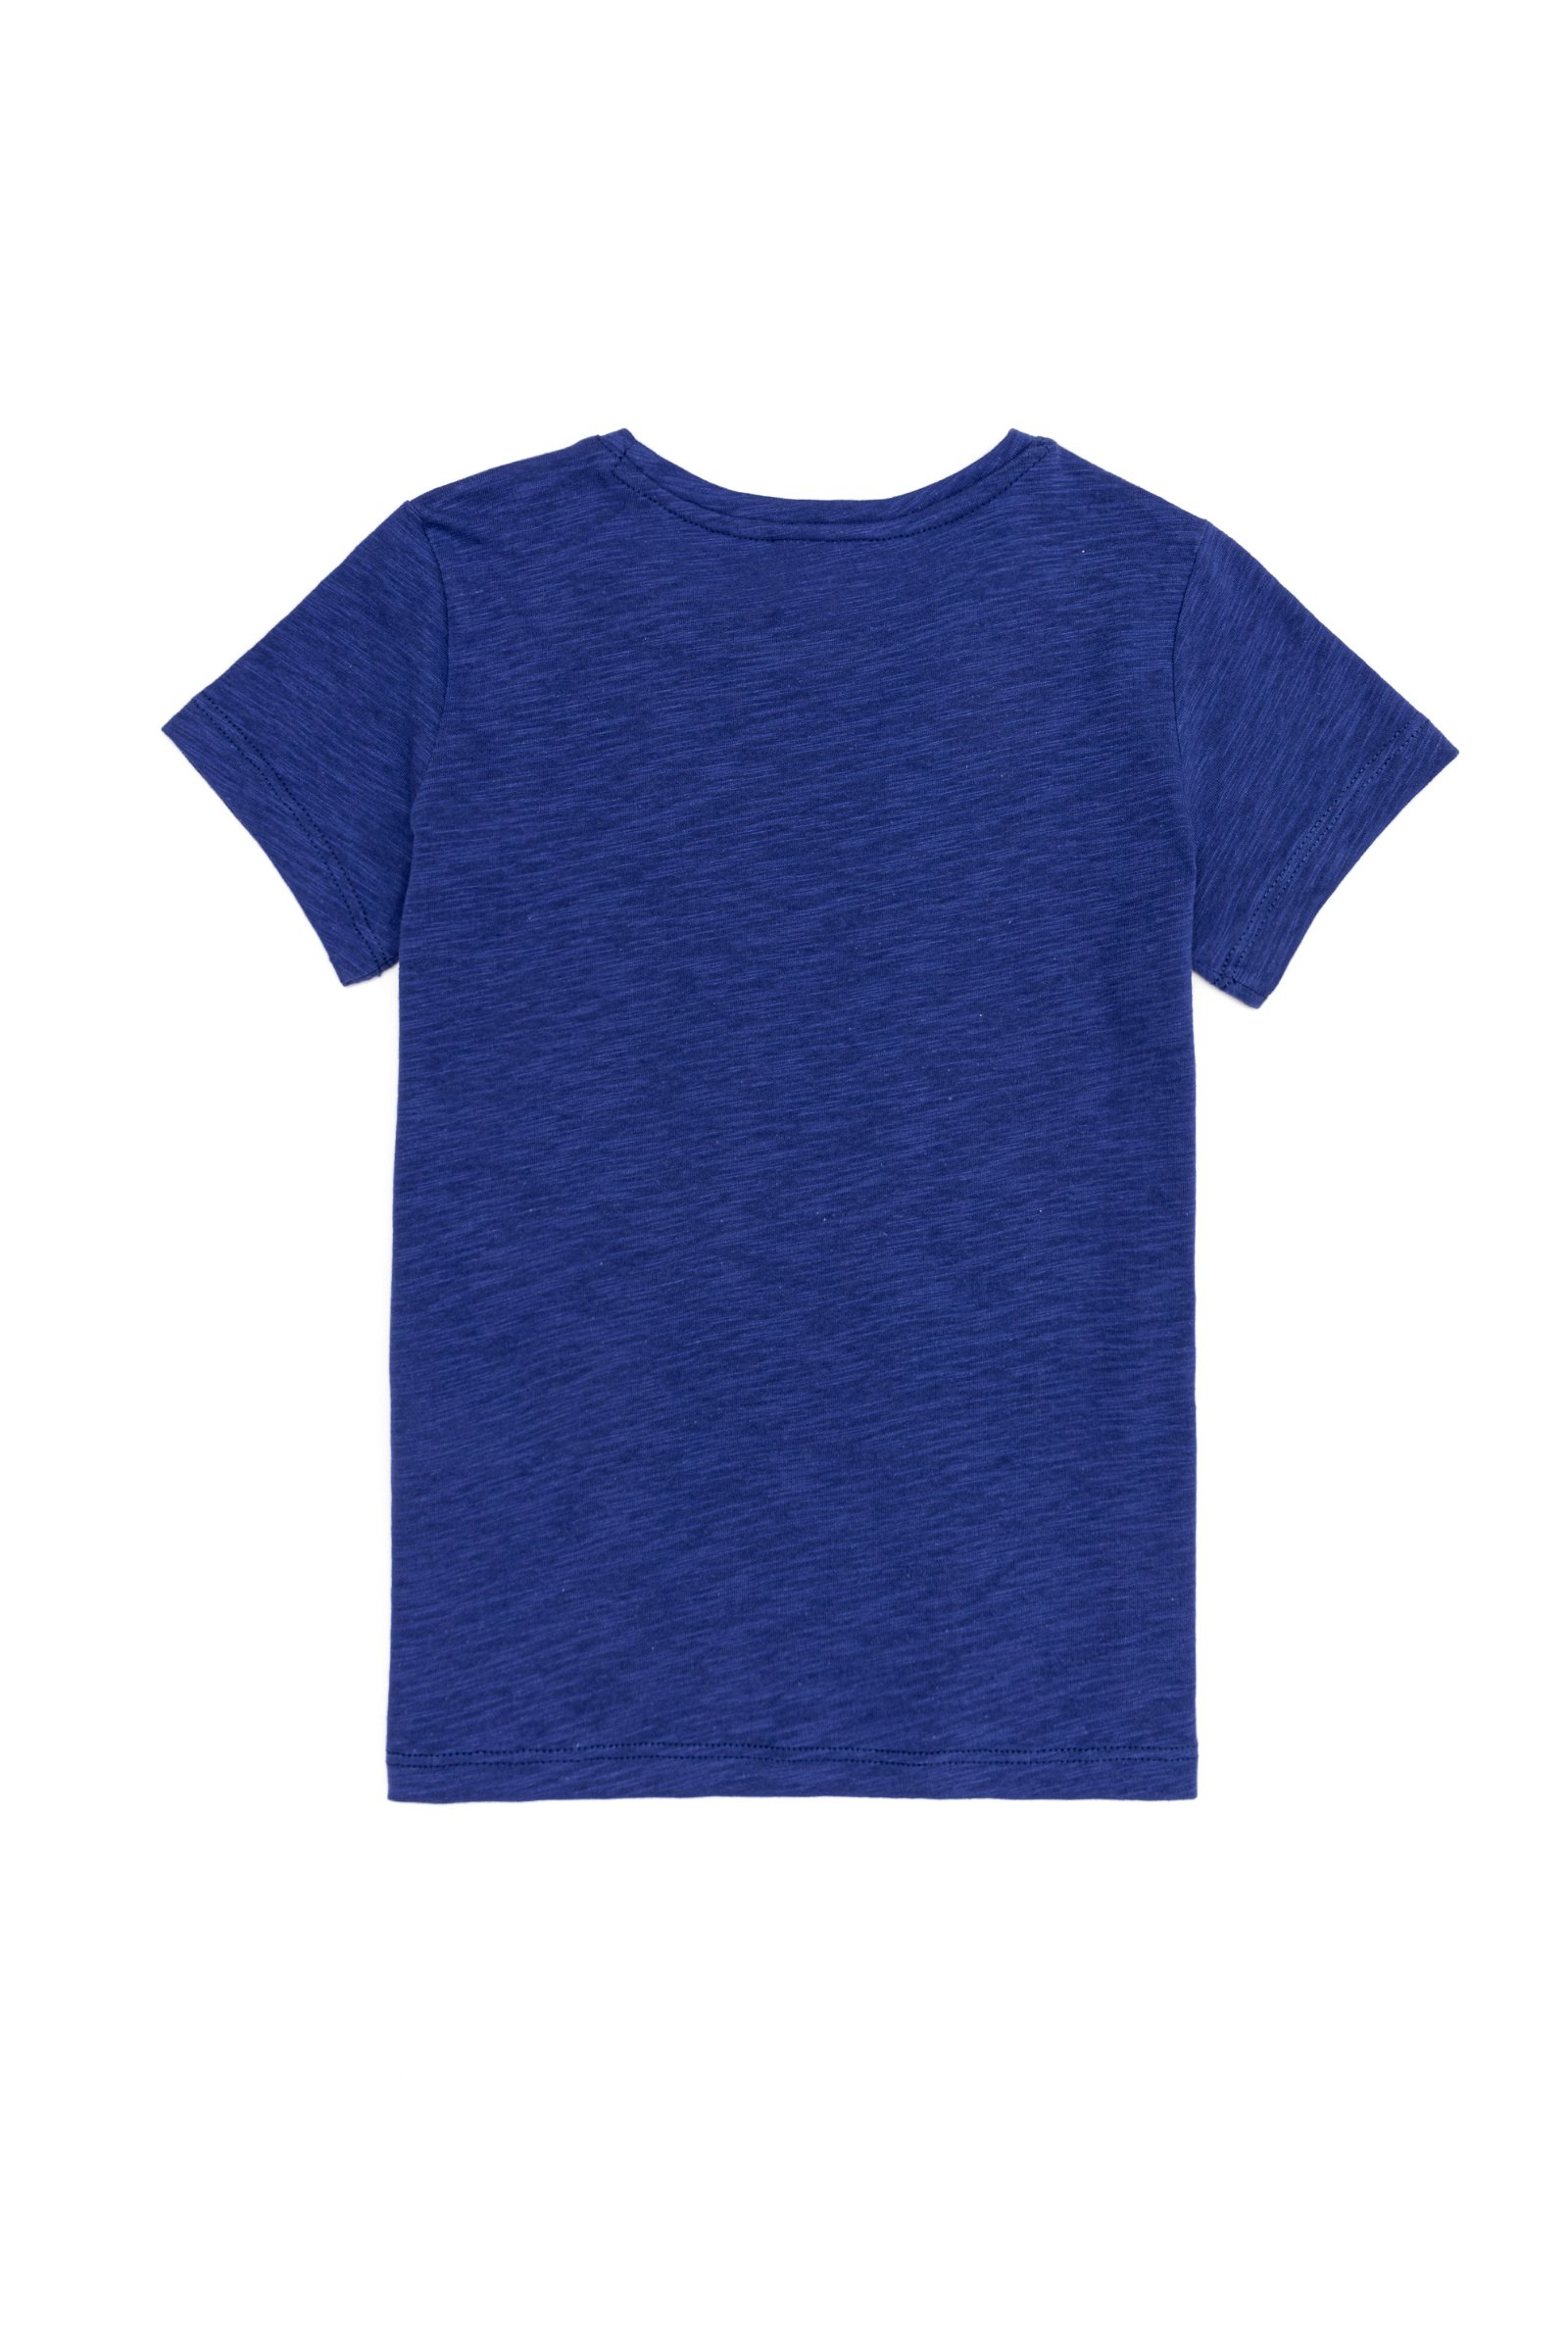 تی شرت  آبی  استاندارد فیت  دخترانه یو اس پولو